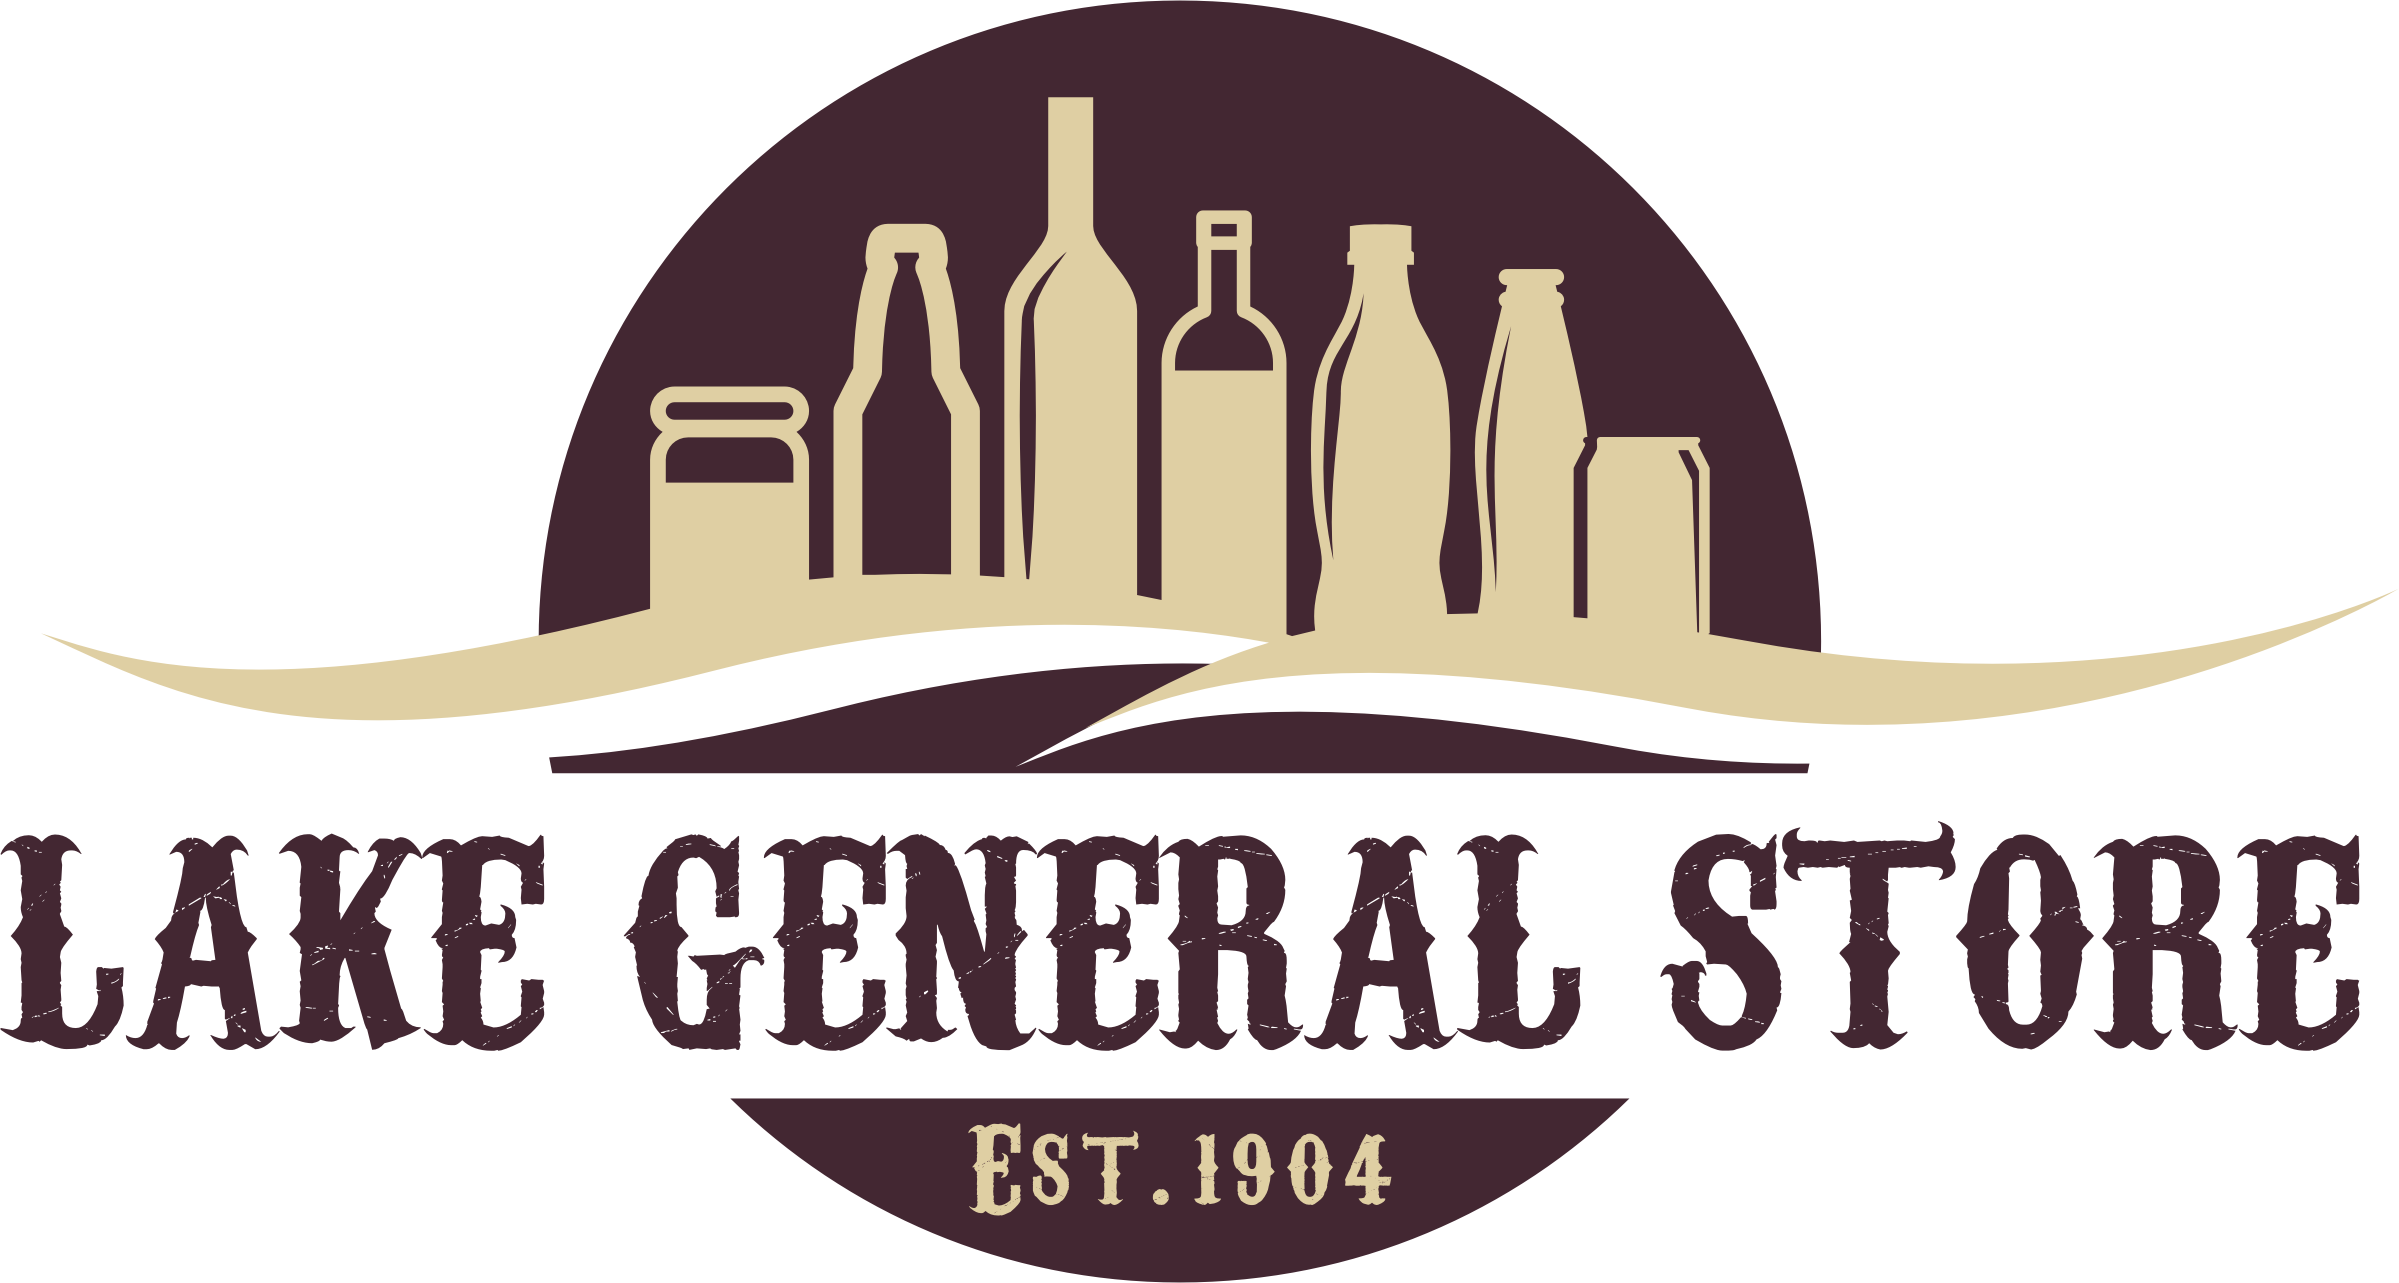 Lake General Store Logo